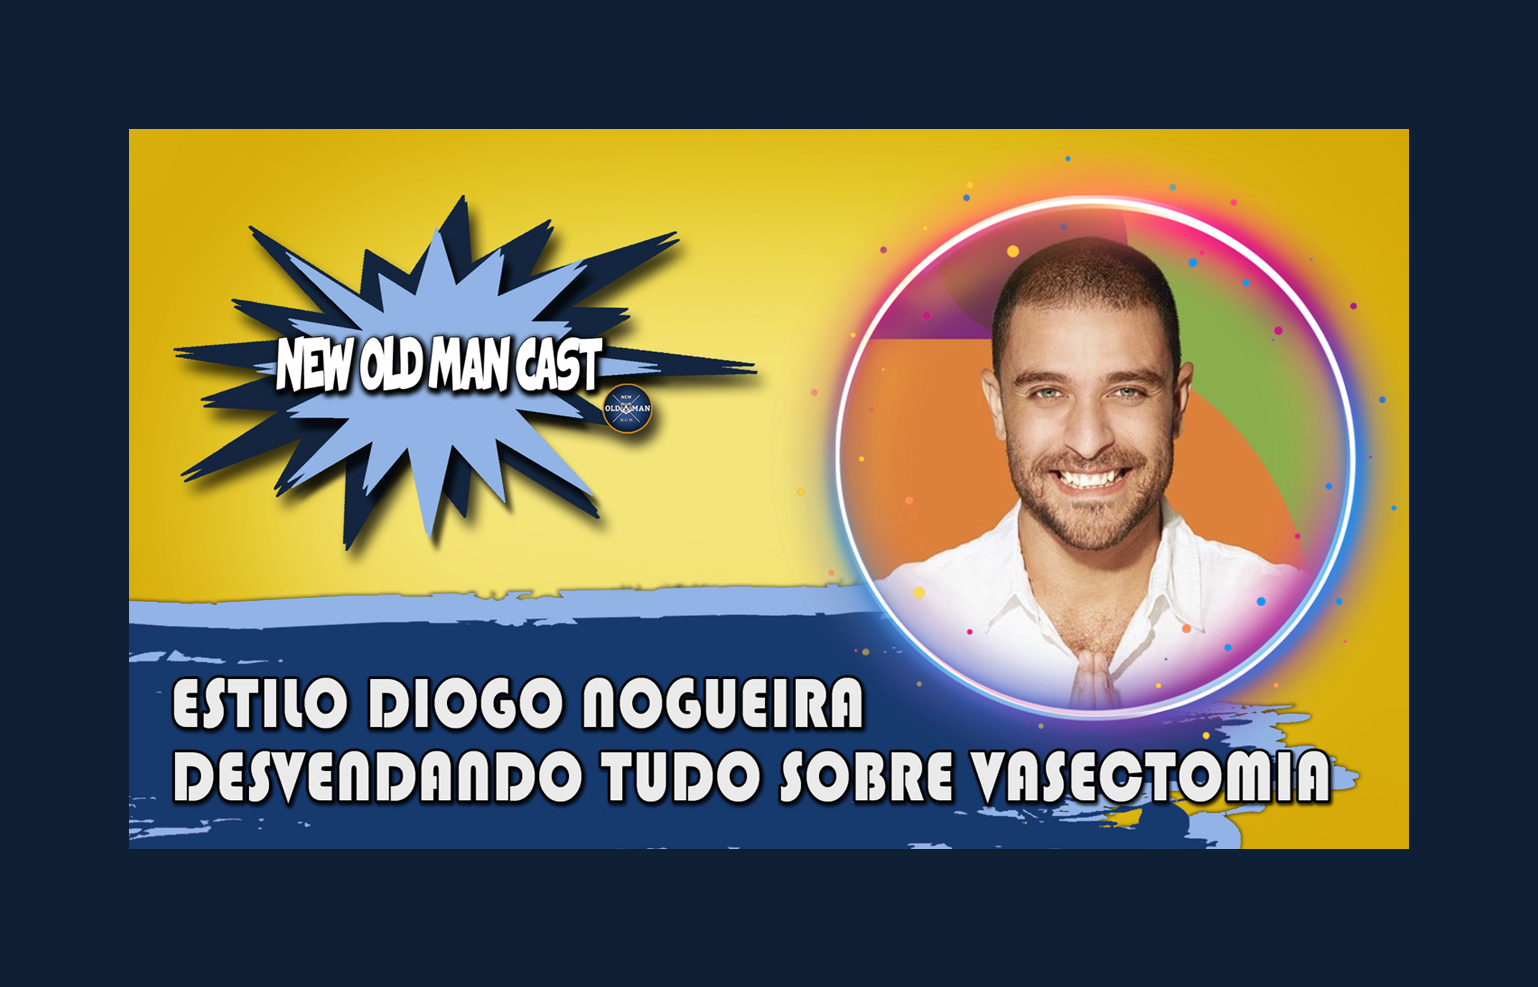 New Old Man Cast #52 - DESVENDANDO TUDO SOBRE VASECTOMIA - Análise de Estilo Diogo Nogueira